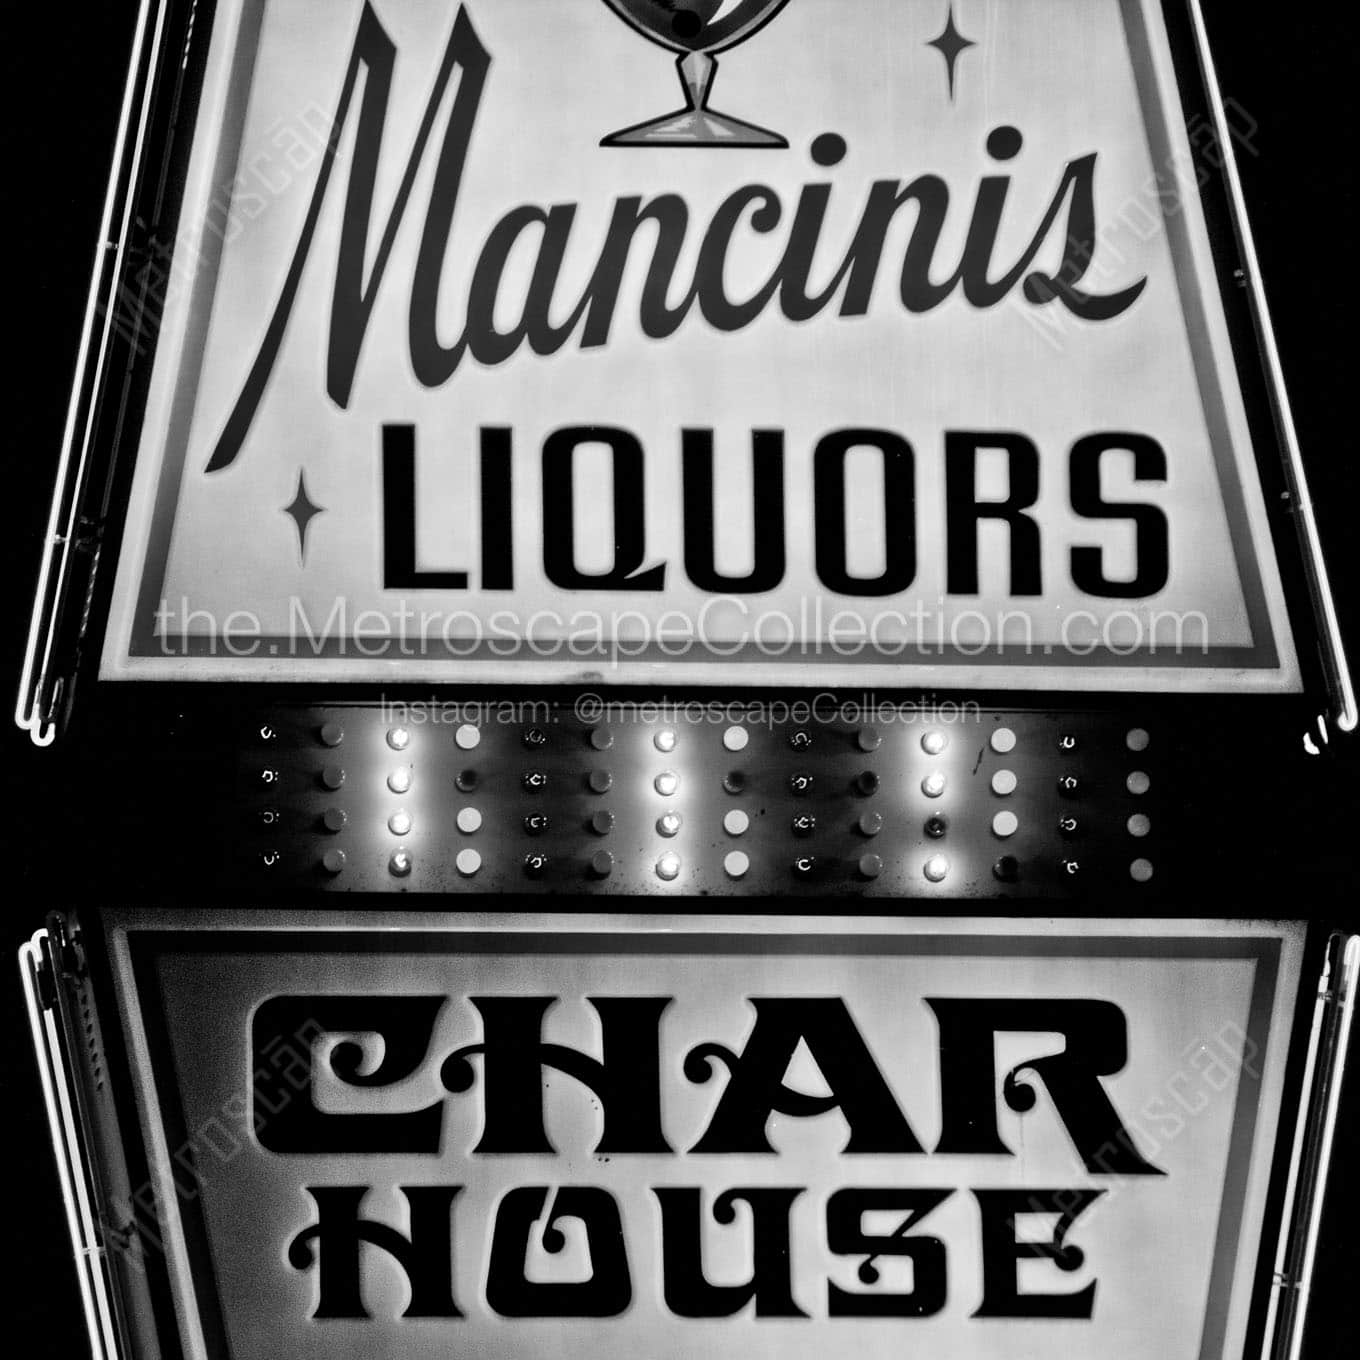 mancinis liquors char house sign Black & White Office Art